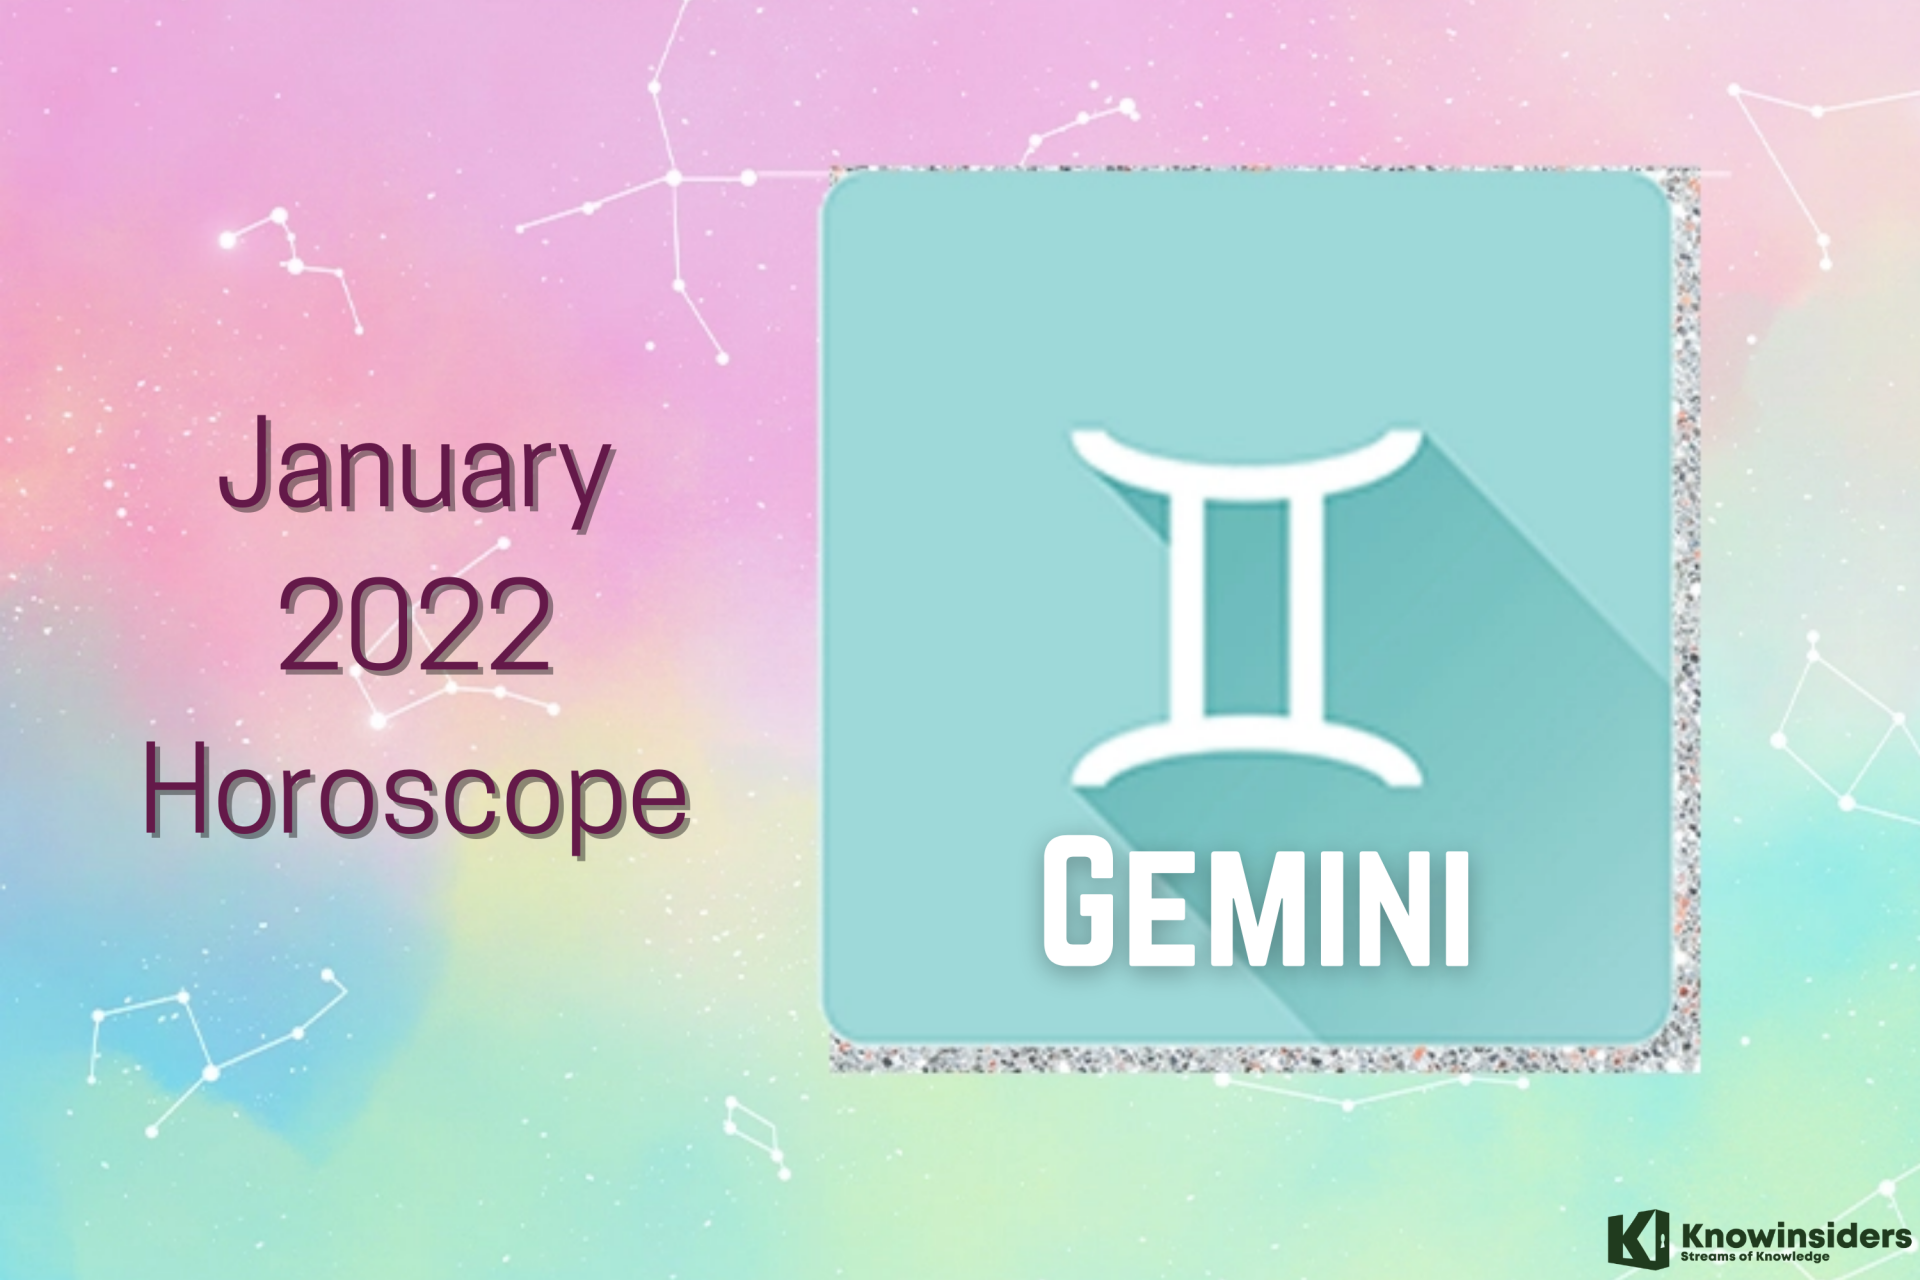 GEMINI January 2022 Horoscope: Prediction for Love, Career, Money